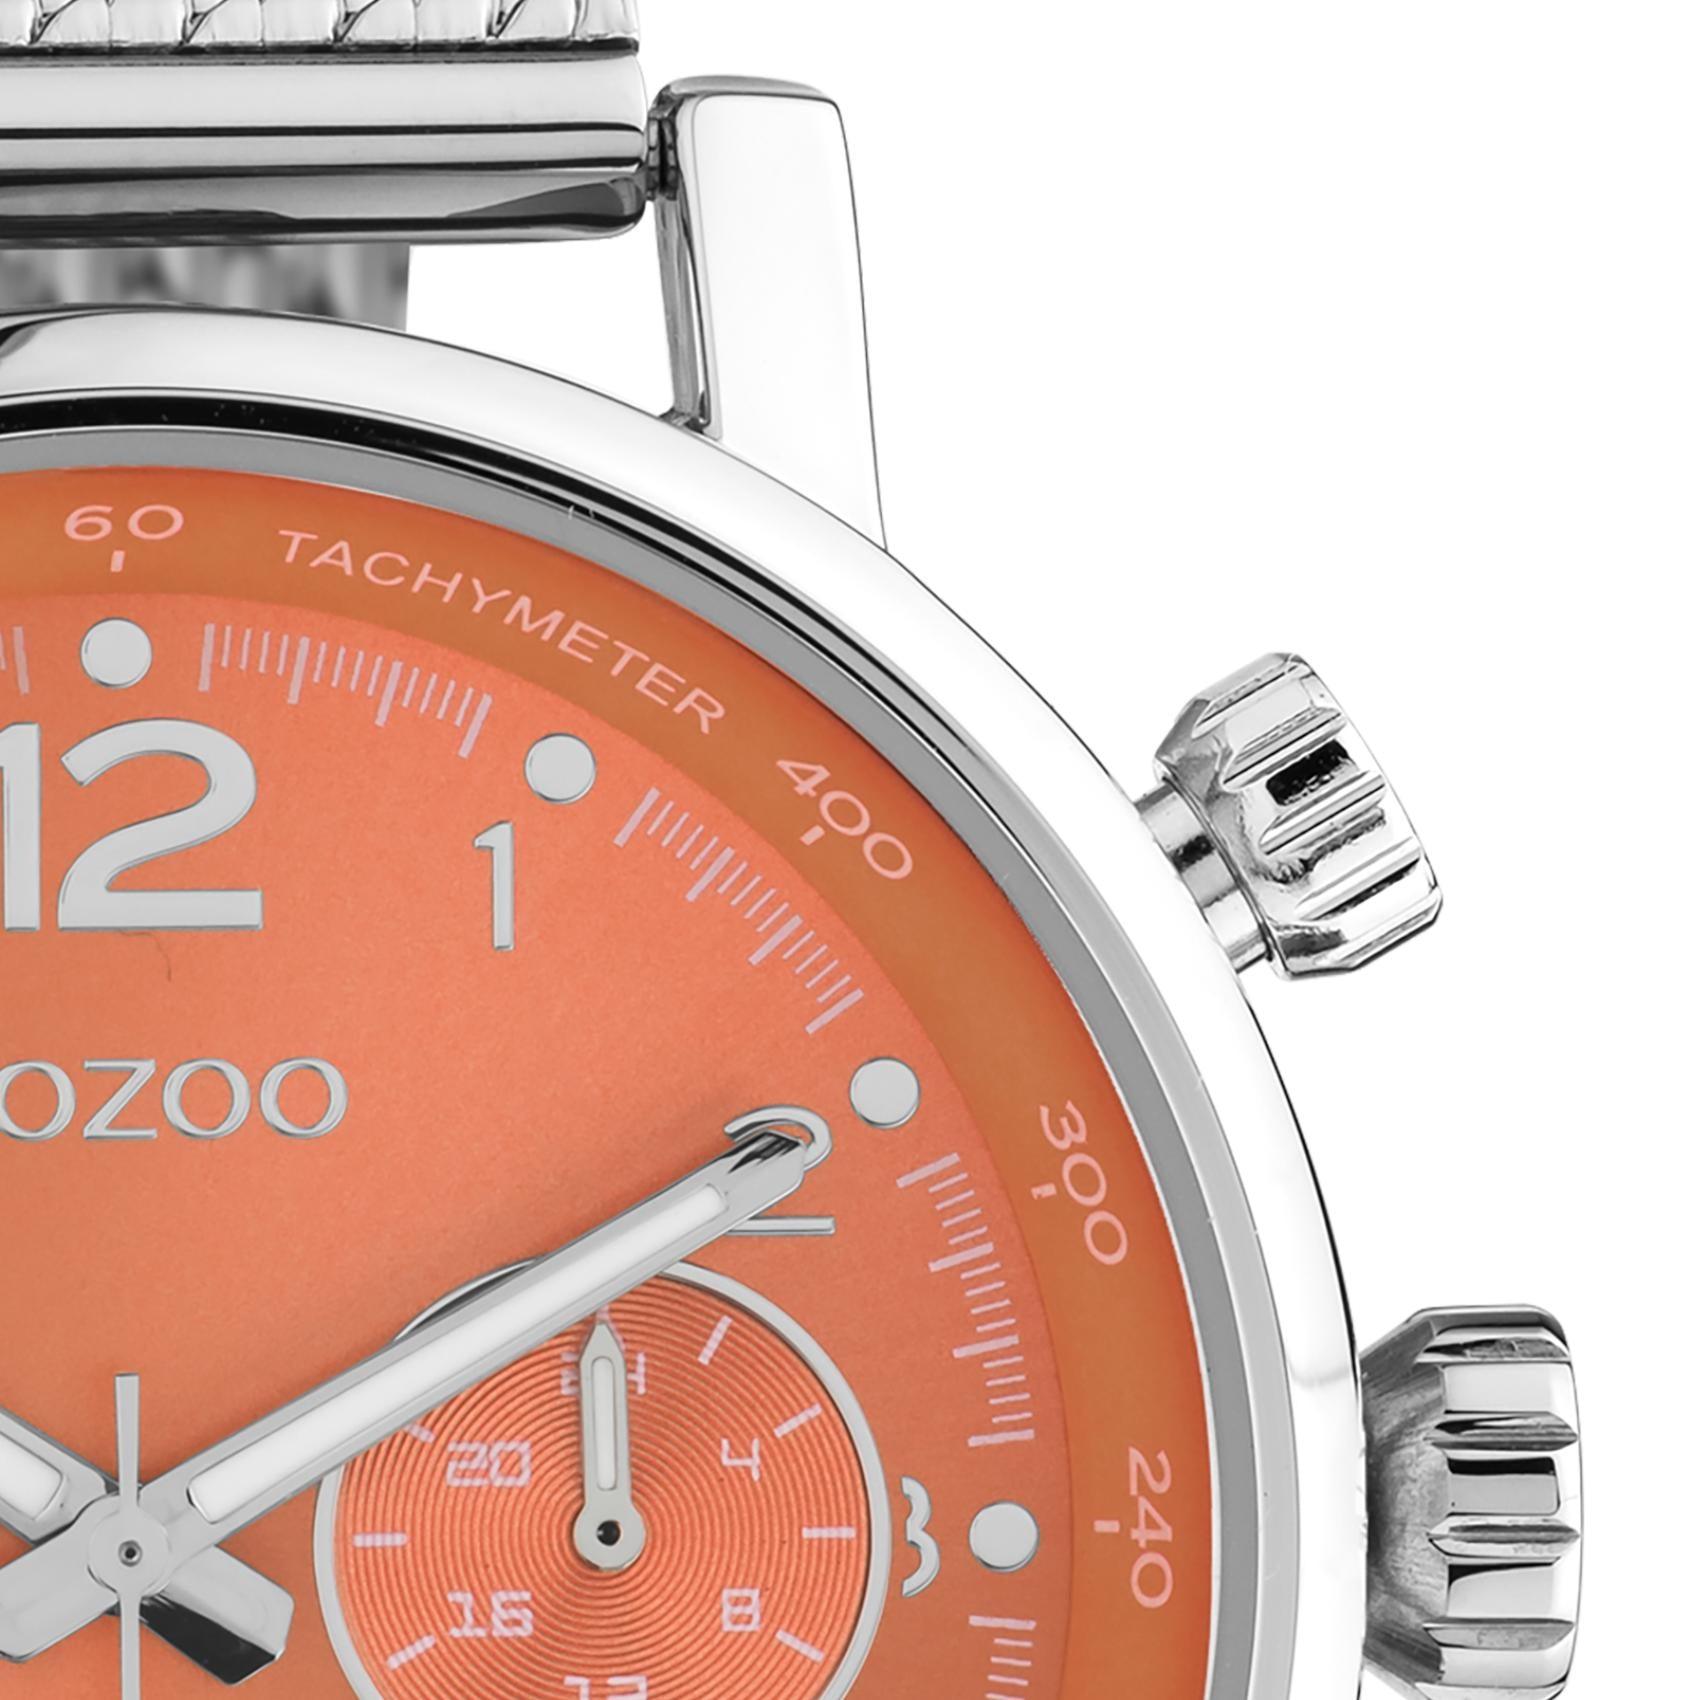 Ρολόι Oozoo C10903 χρονογράφος με ασημί ατσάλινο μπρασελέ πορτοκαλί καντράν διαμέτρου 42mm και μηχανισμό μπαταρίας quartz.